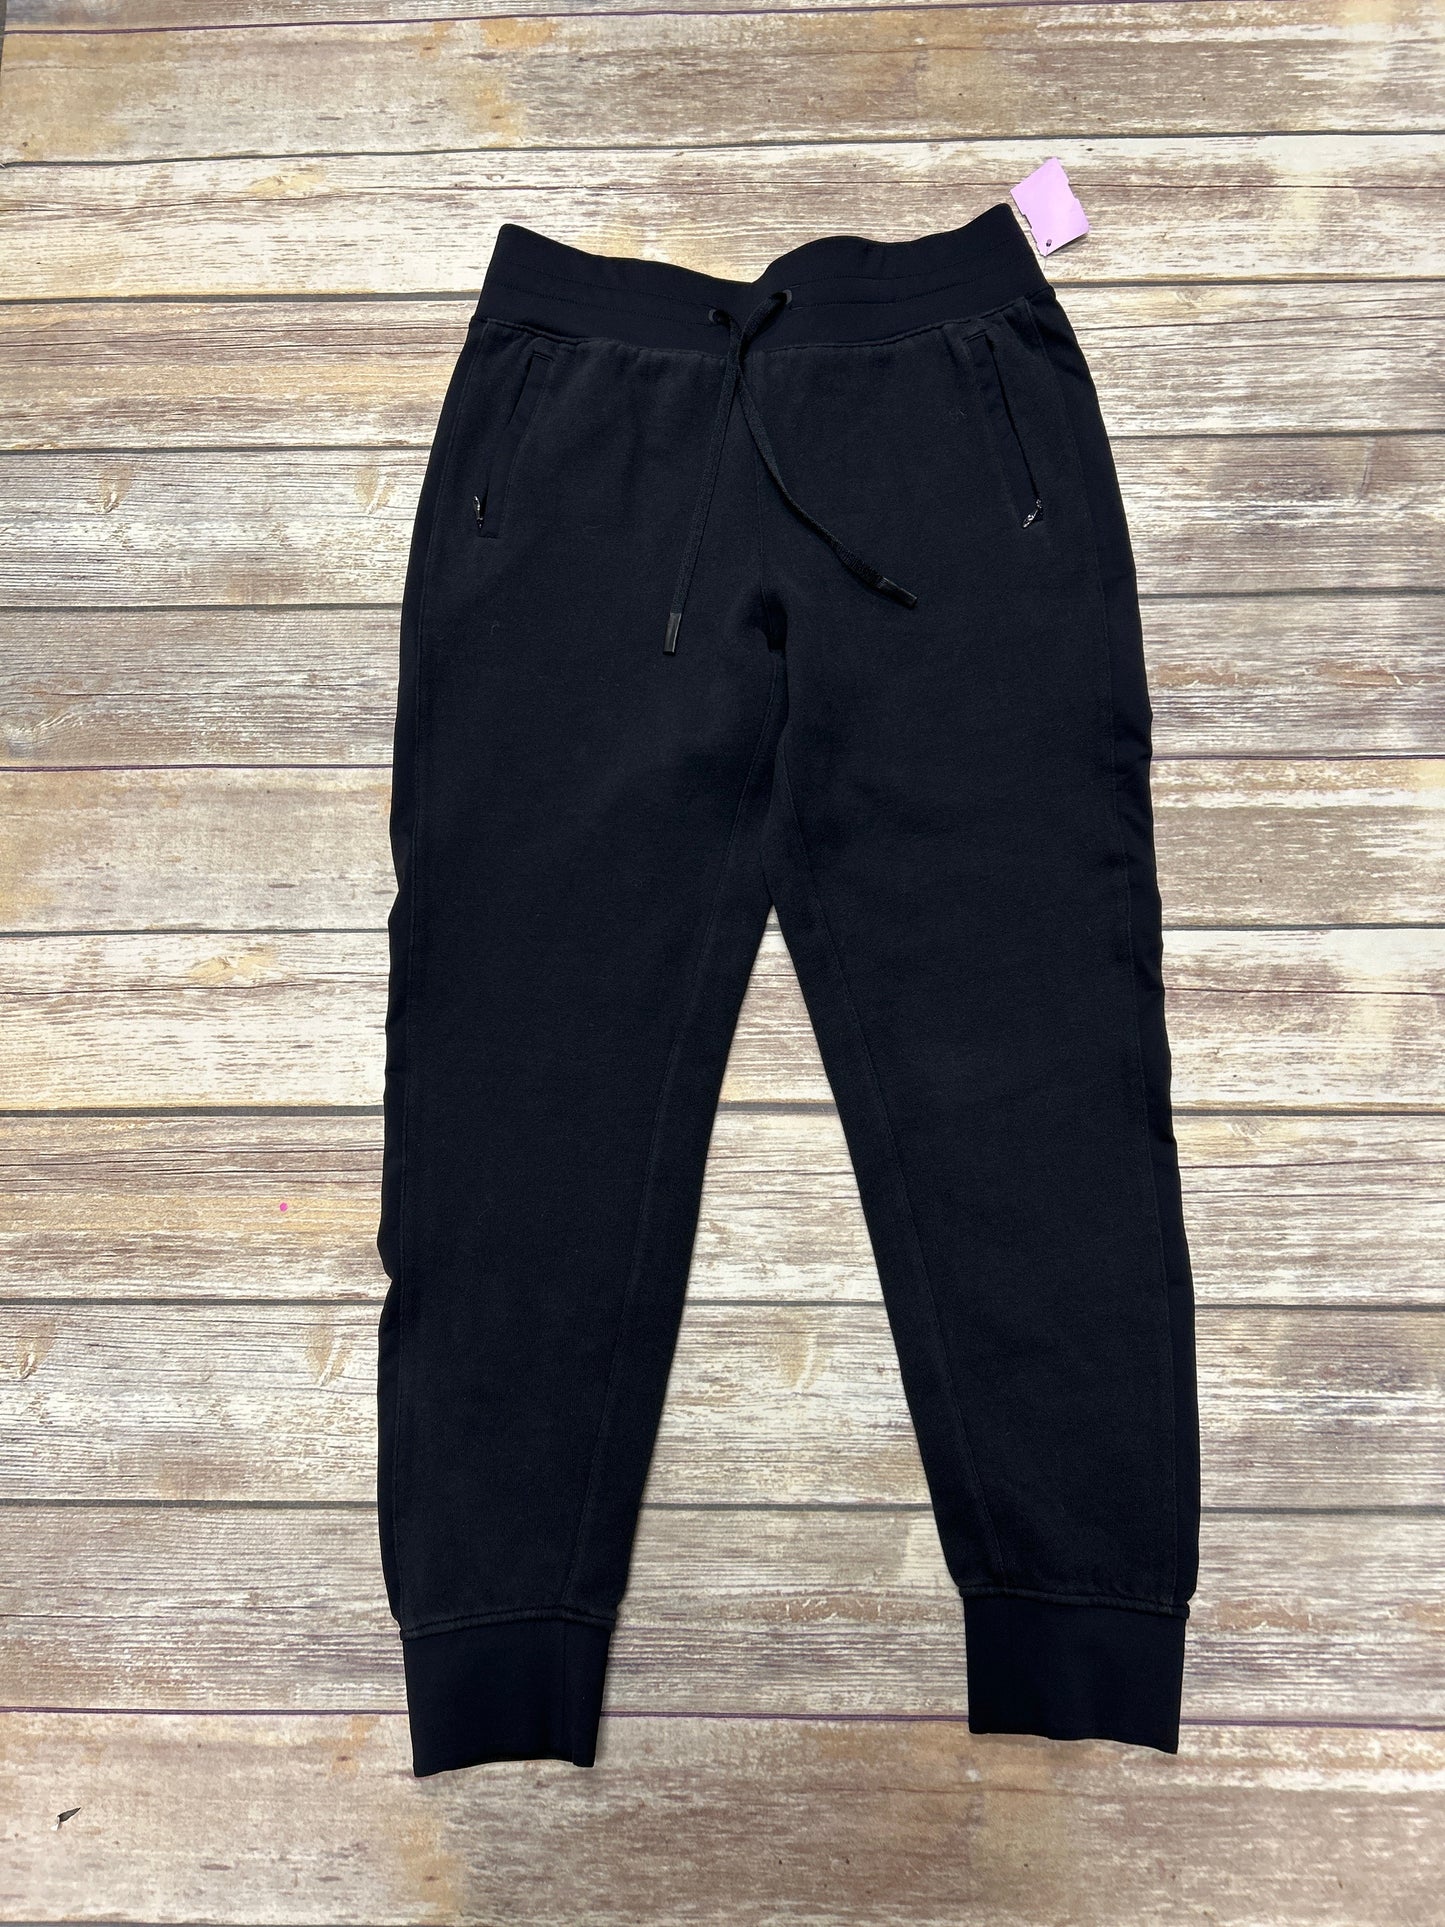 Black Athletic Pants Lululemon, Size 8